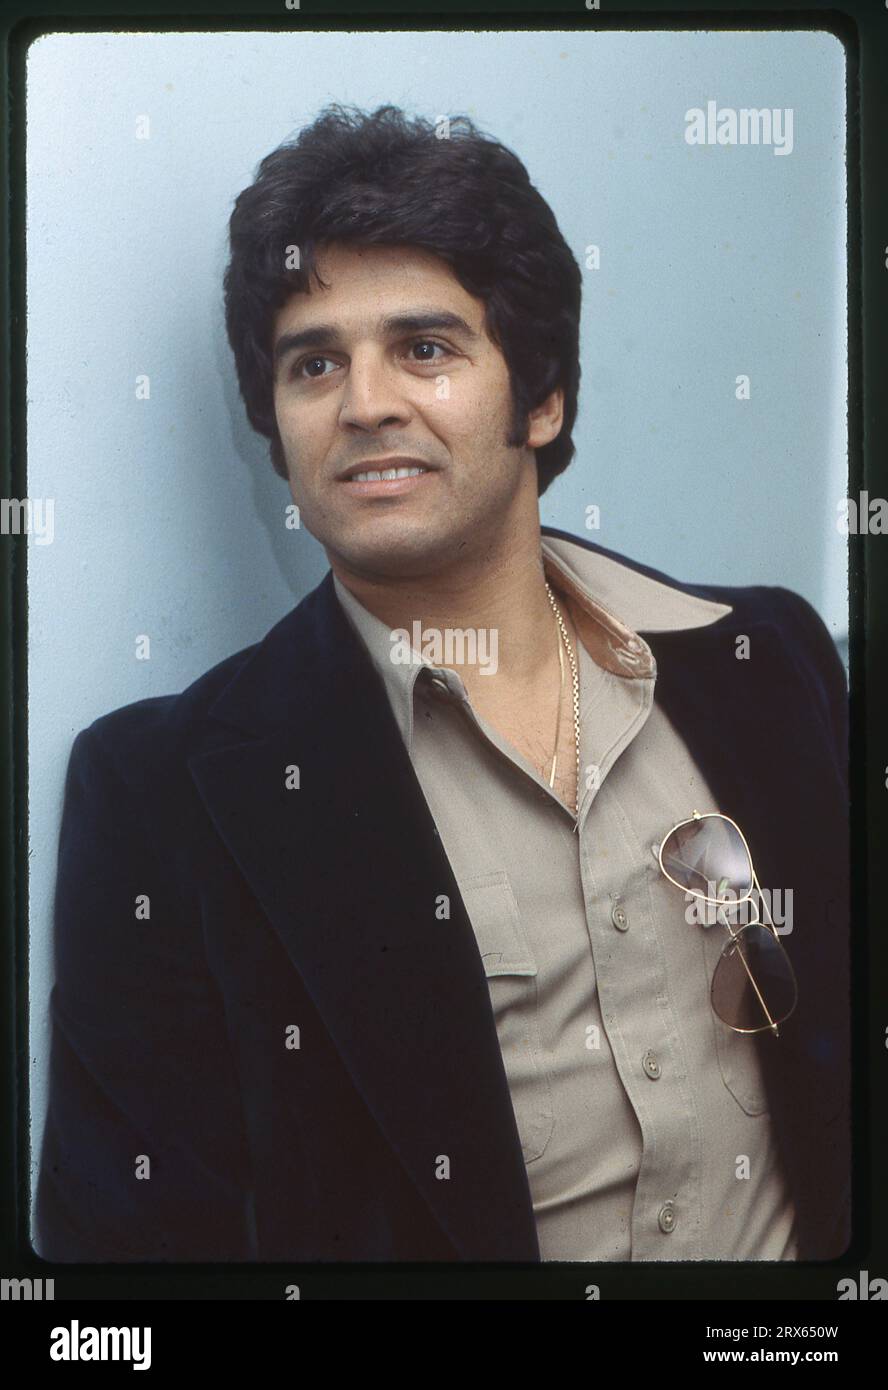 Porträt des Schauspielers Eric Estrada, der vor allem für seine Rolle als Cop Ponch in der Fernsehsendung Chips bekannt ist. Später wurde er als Reserve-Polizist in Indiana und Virginia tätig. Bei einer Prominenz-Sportveranstaltung in Manhattan im Jahr 1978. Stockfoto